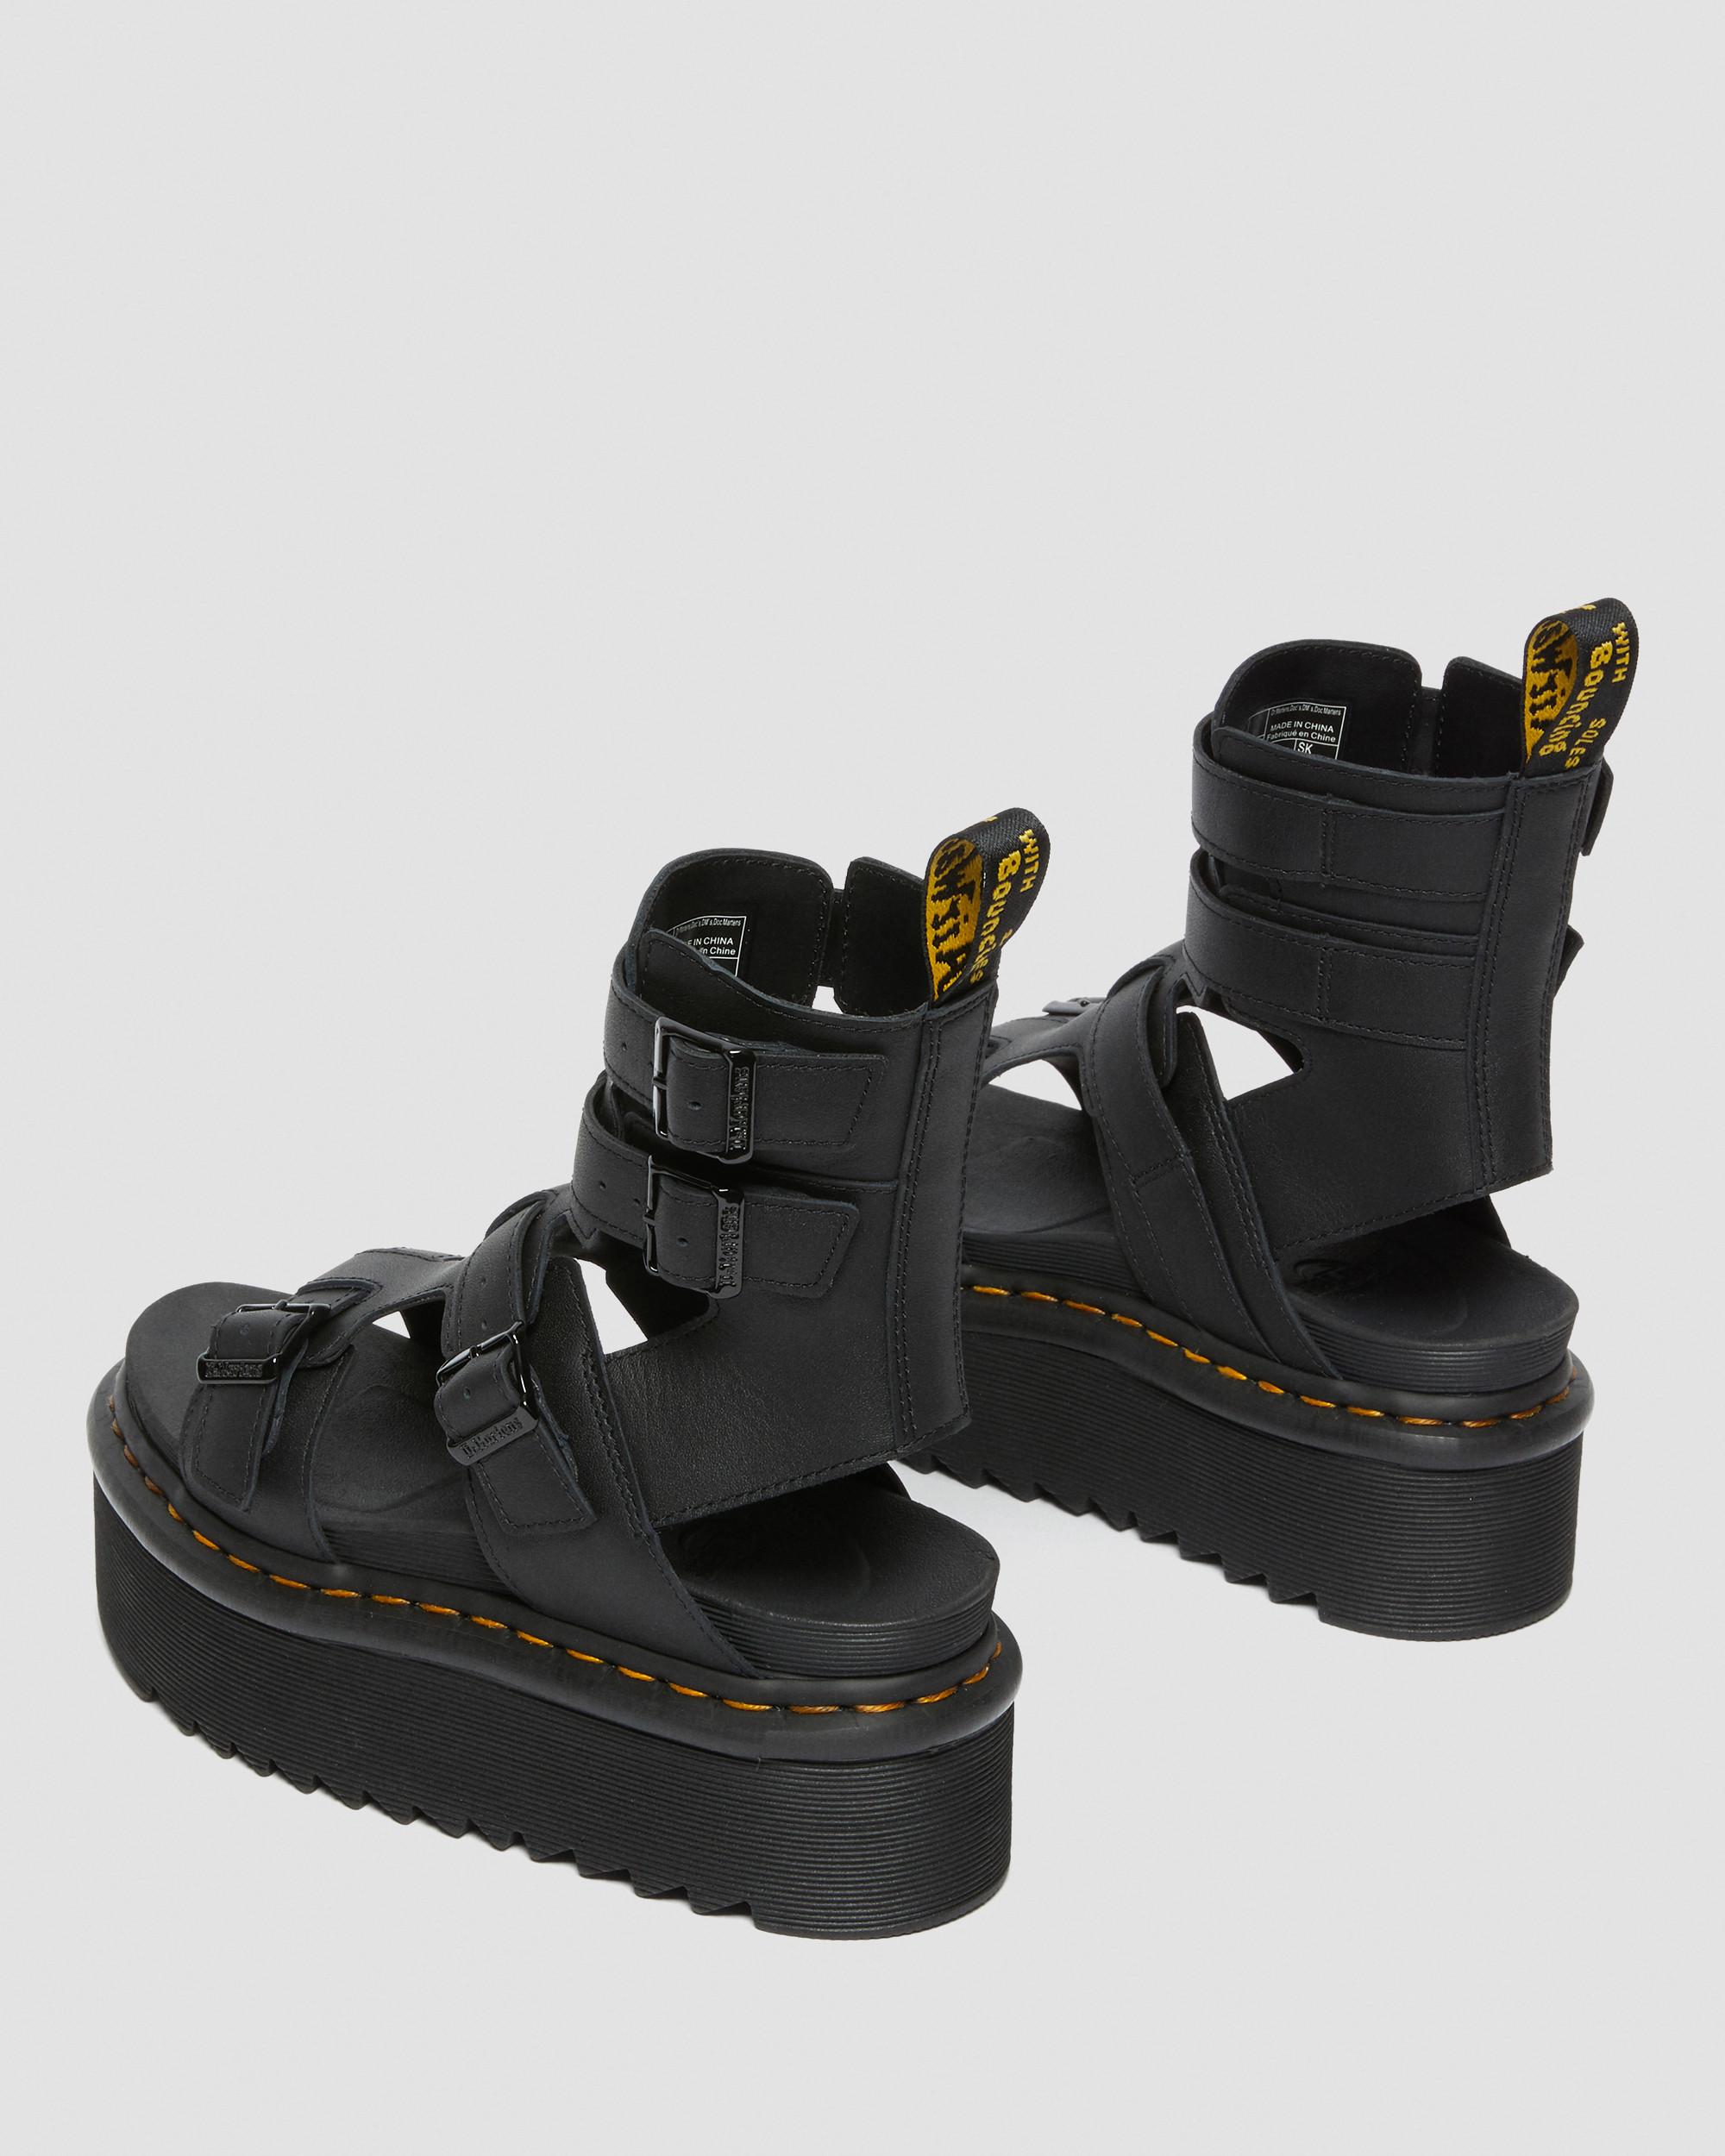 Giavanna Leather Platform Gladiator Sandals in Black | Dr. Martens